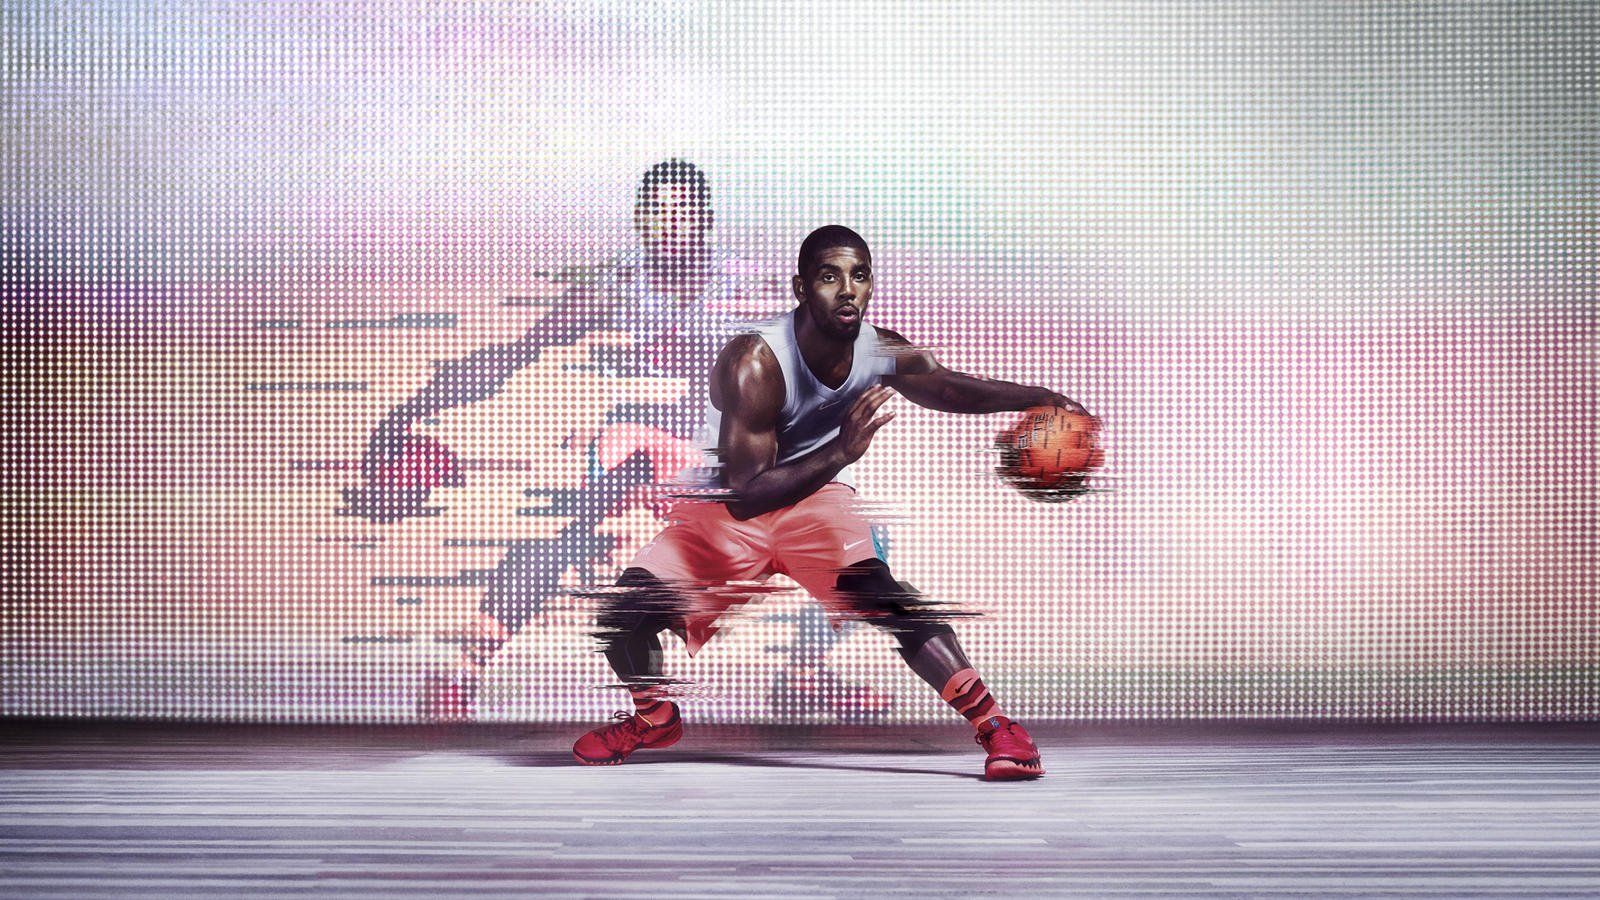 Kyrie Irving Nike Basketball Wallpaper